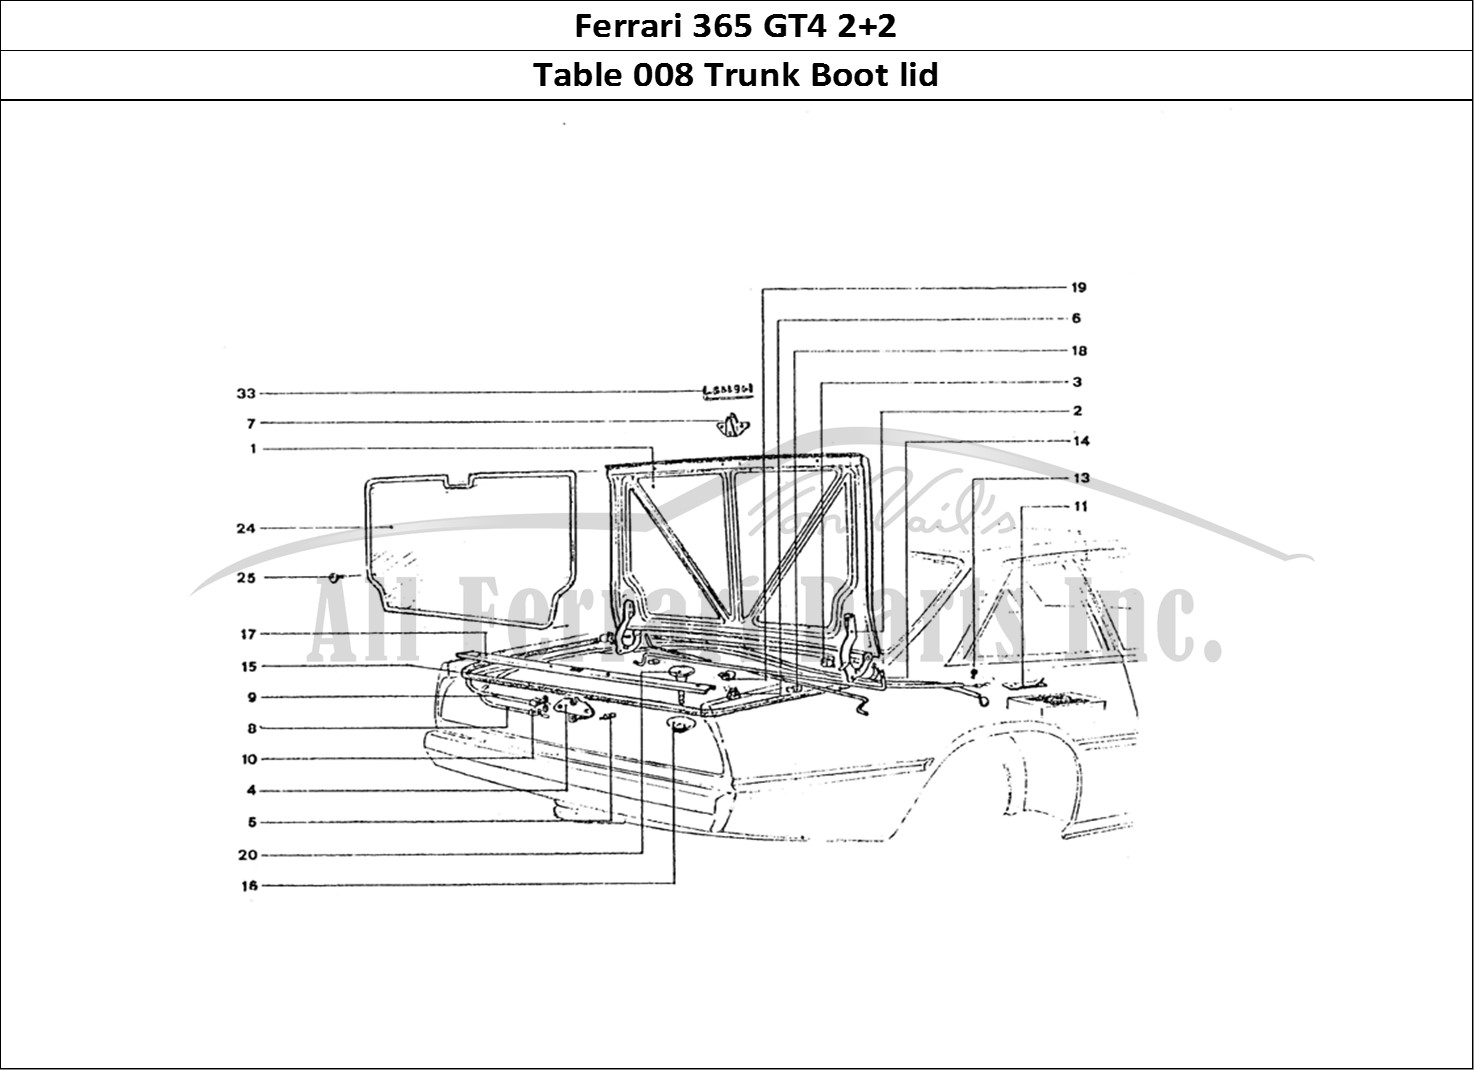 Ferrari Parts Ferrari 365 GT4 2+2 Coachwork Page 008 Rear Boot lid